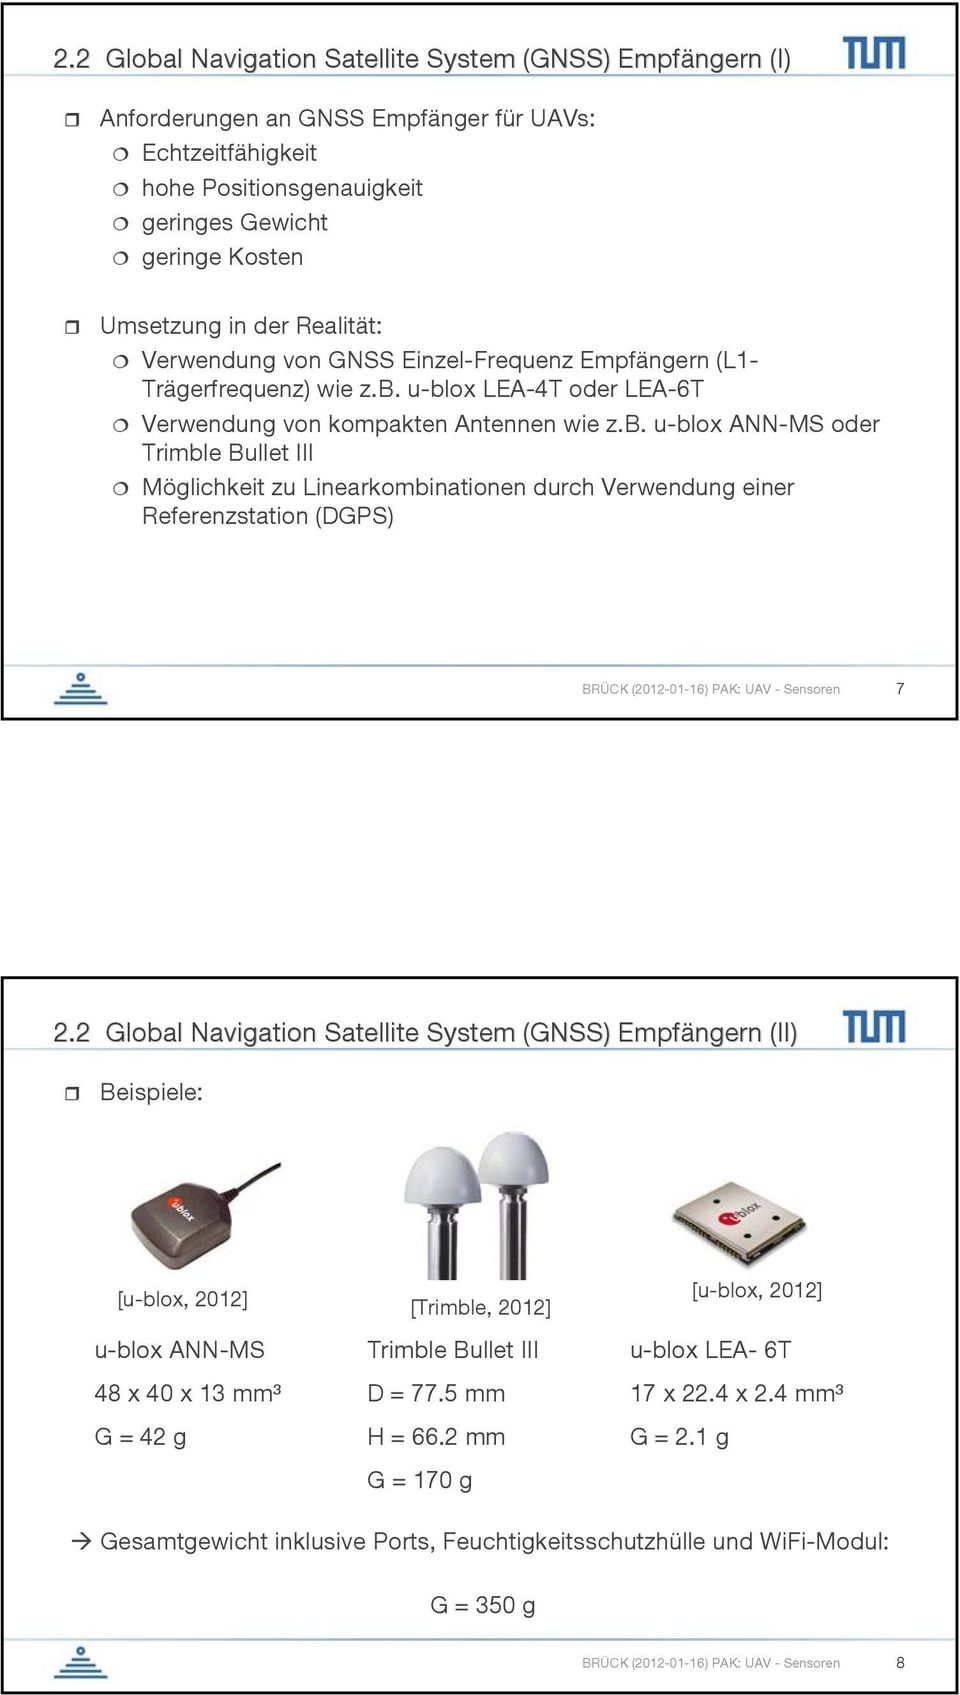 u-blox LEA-4T oder LEA-6T Verwendung von kompakten Antennen wie z.b. u-blox ANN-MS oder Trimble Bullet III Möglichkeit zu Linearkombinationen durch Verwendung einer Referenzstation (DGPS) BRÜCK (2012-01-16) PAK: UAV - Sensoren 7 2.